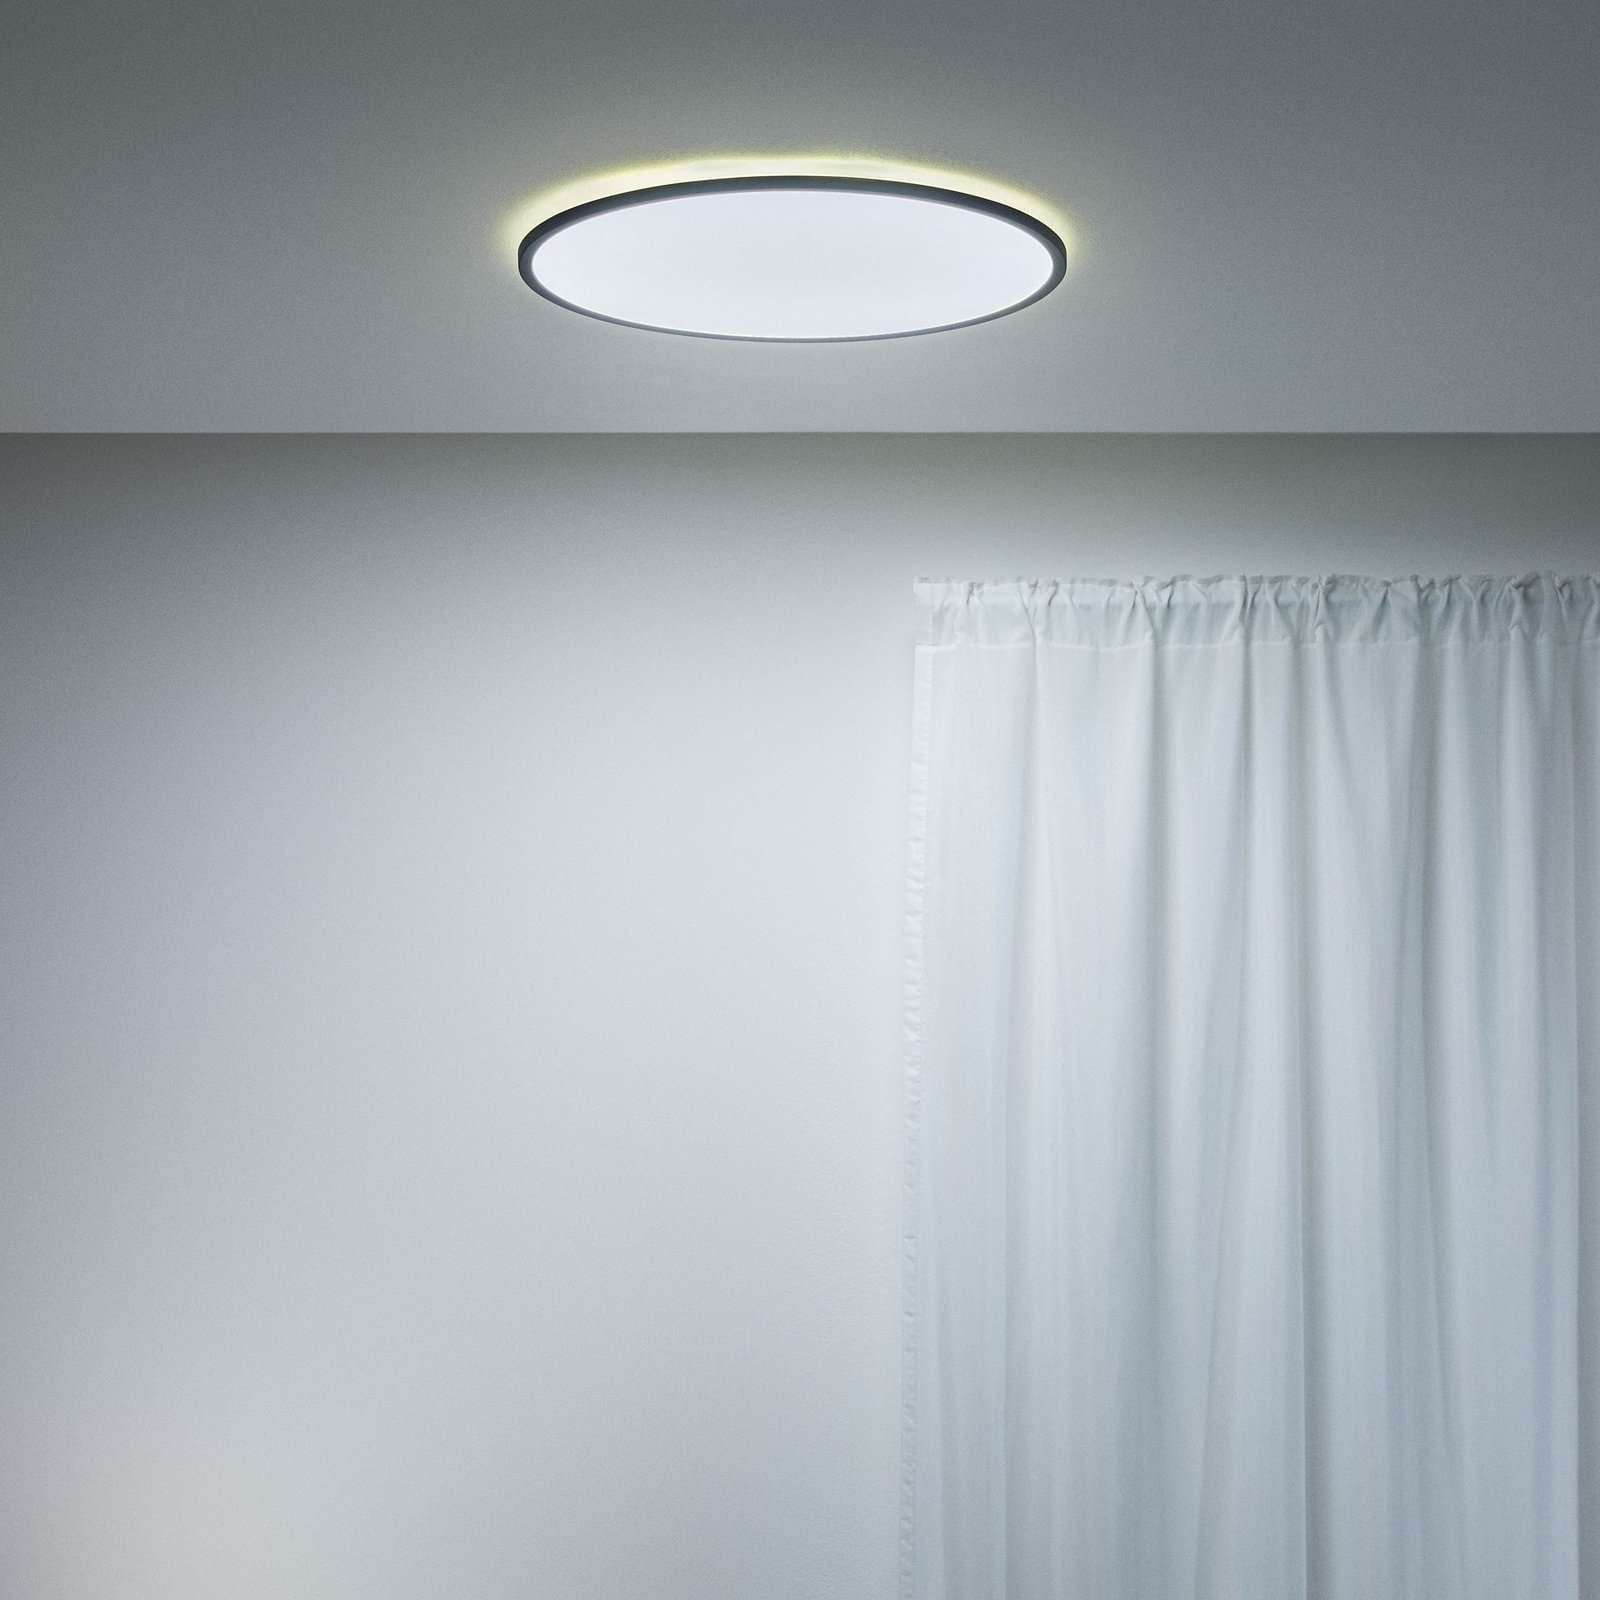 WiZ SuperSlim LED stropní světlo CCT Ø55cm černé